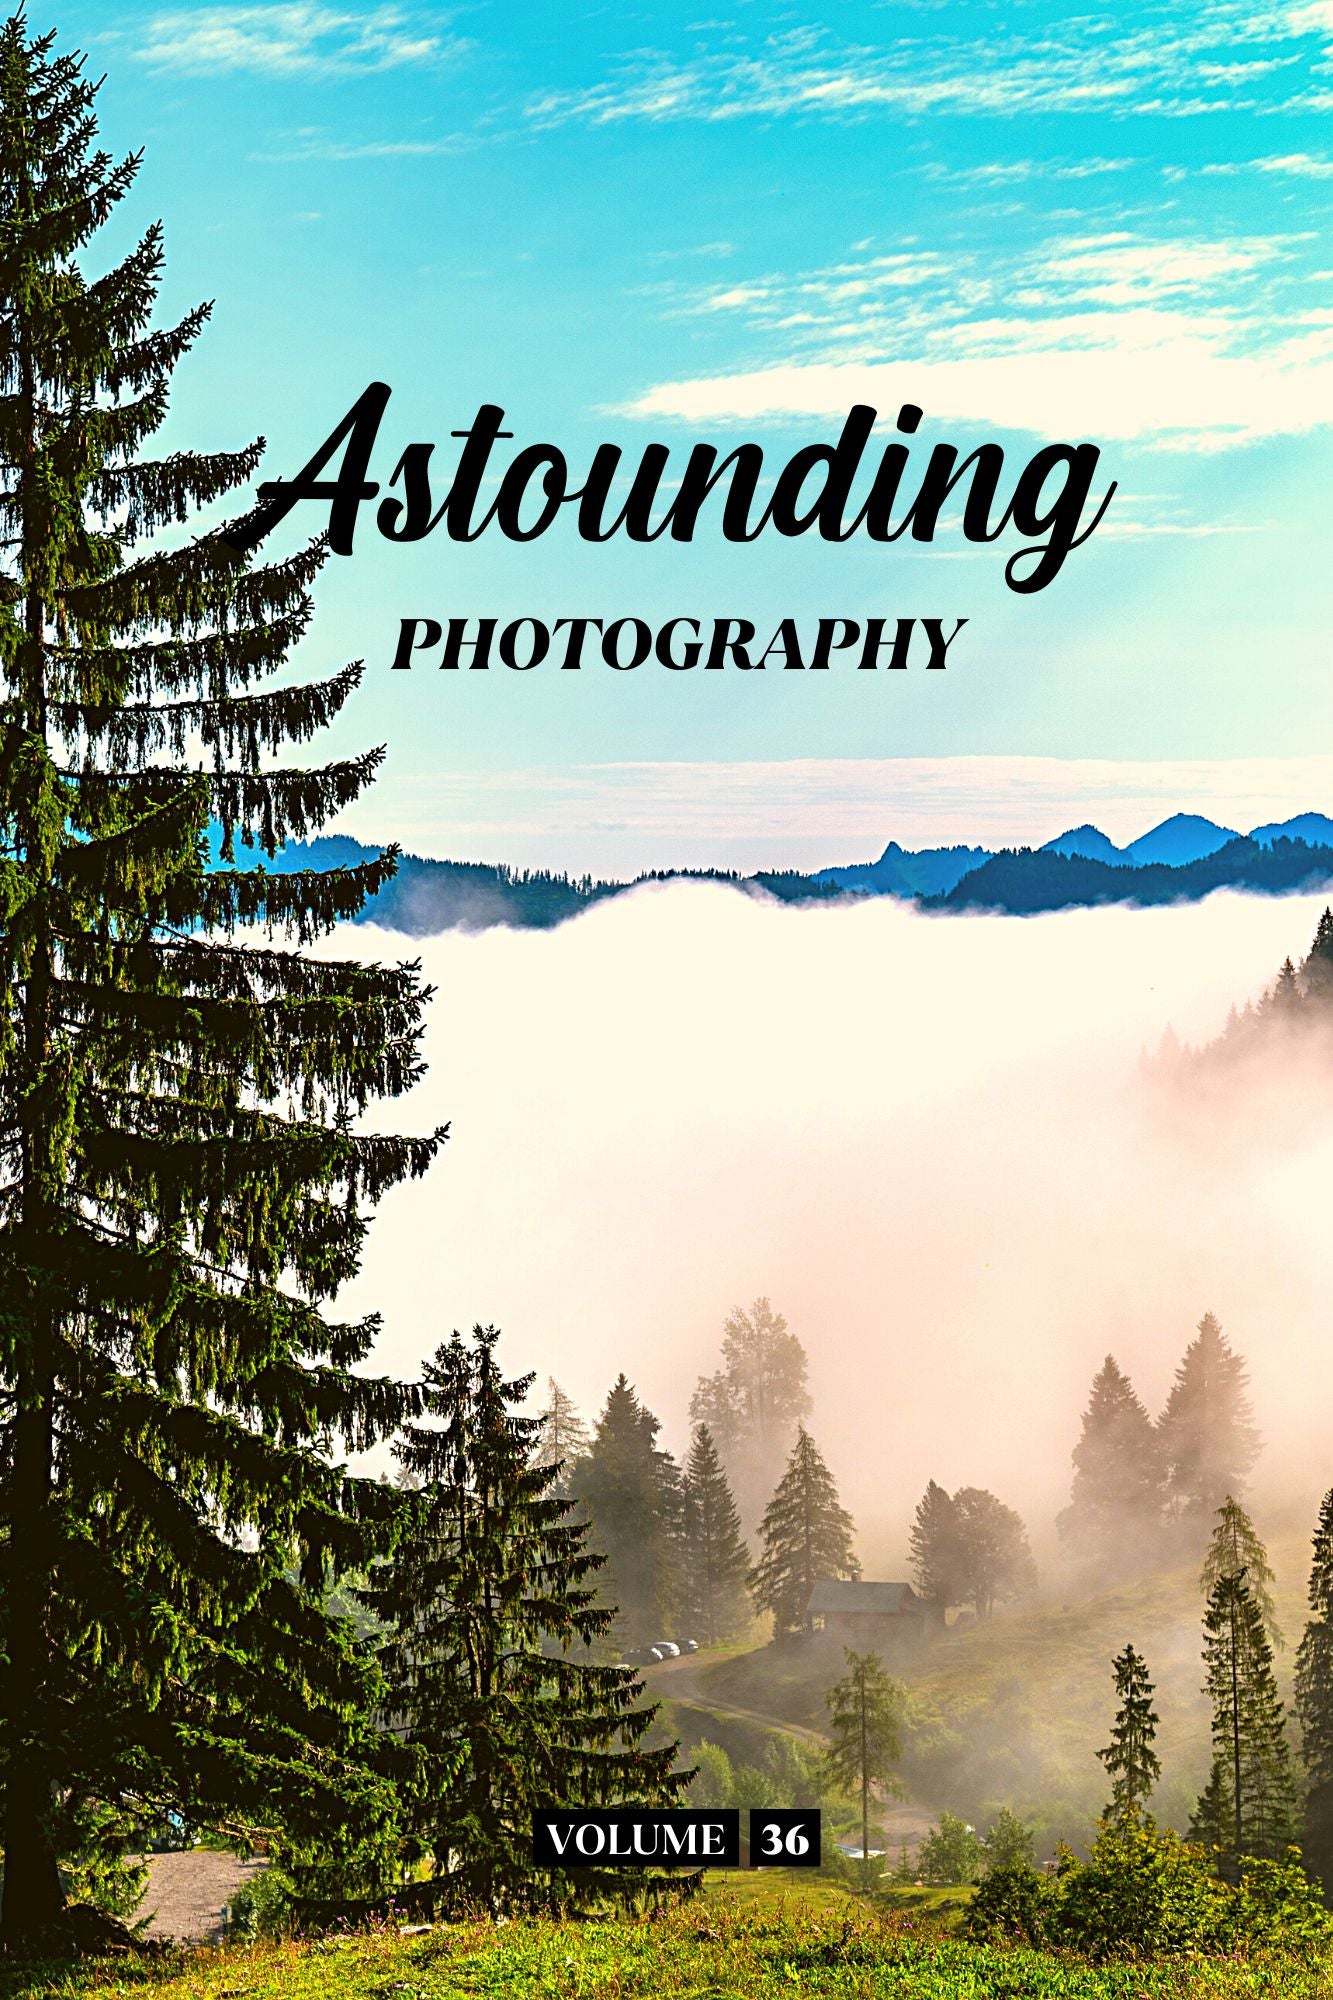 Astounding Photography Volume 36 (Physical Book Pre-Order)